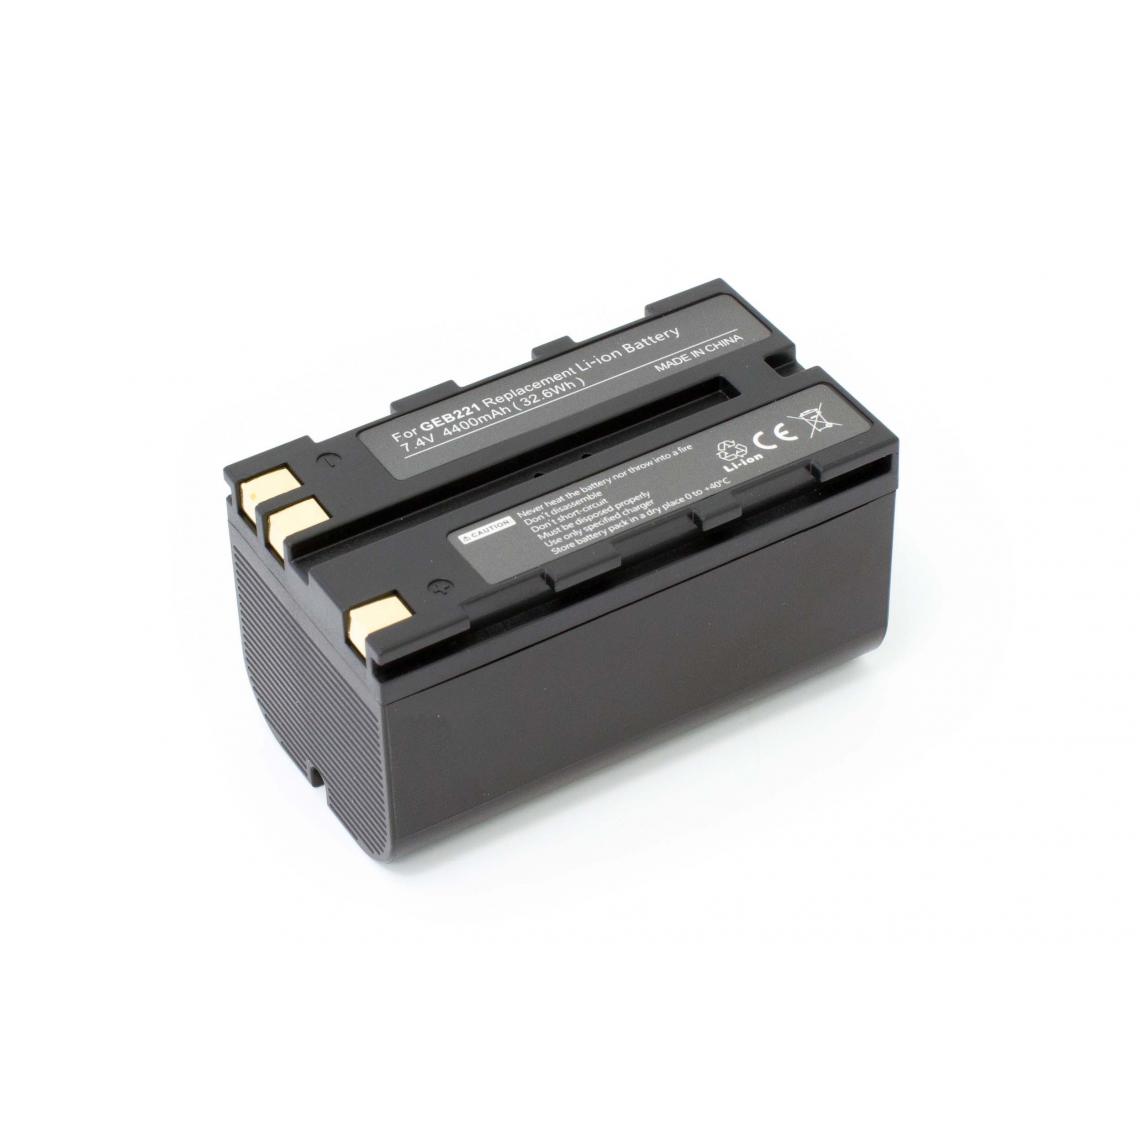 Vhbw - vhbw batterie compatible avec Leica Viva GS08 plus NetRover, TS12 appareil photo DSLR (4400mAh, 7,4V, Li-Ion) - Piles rechargeables